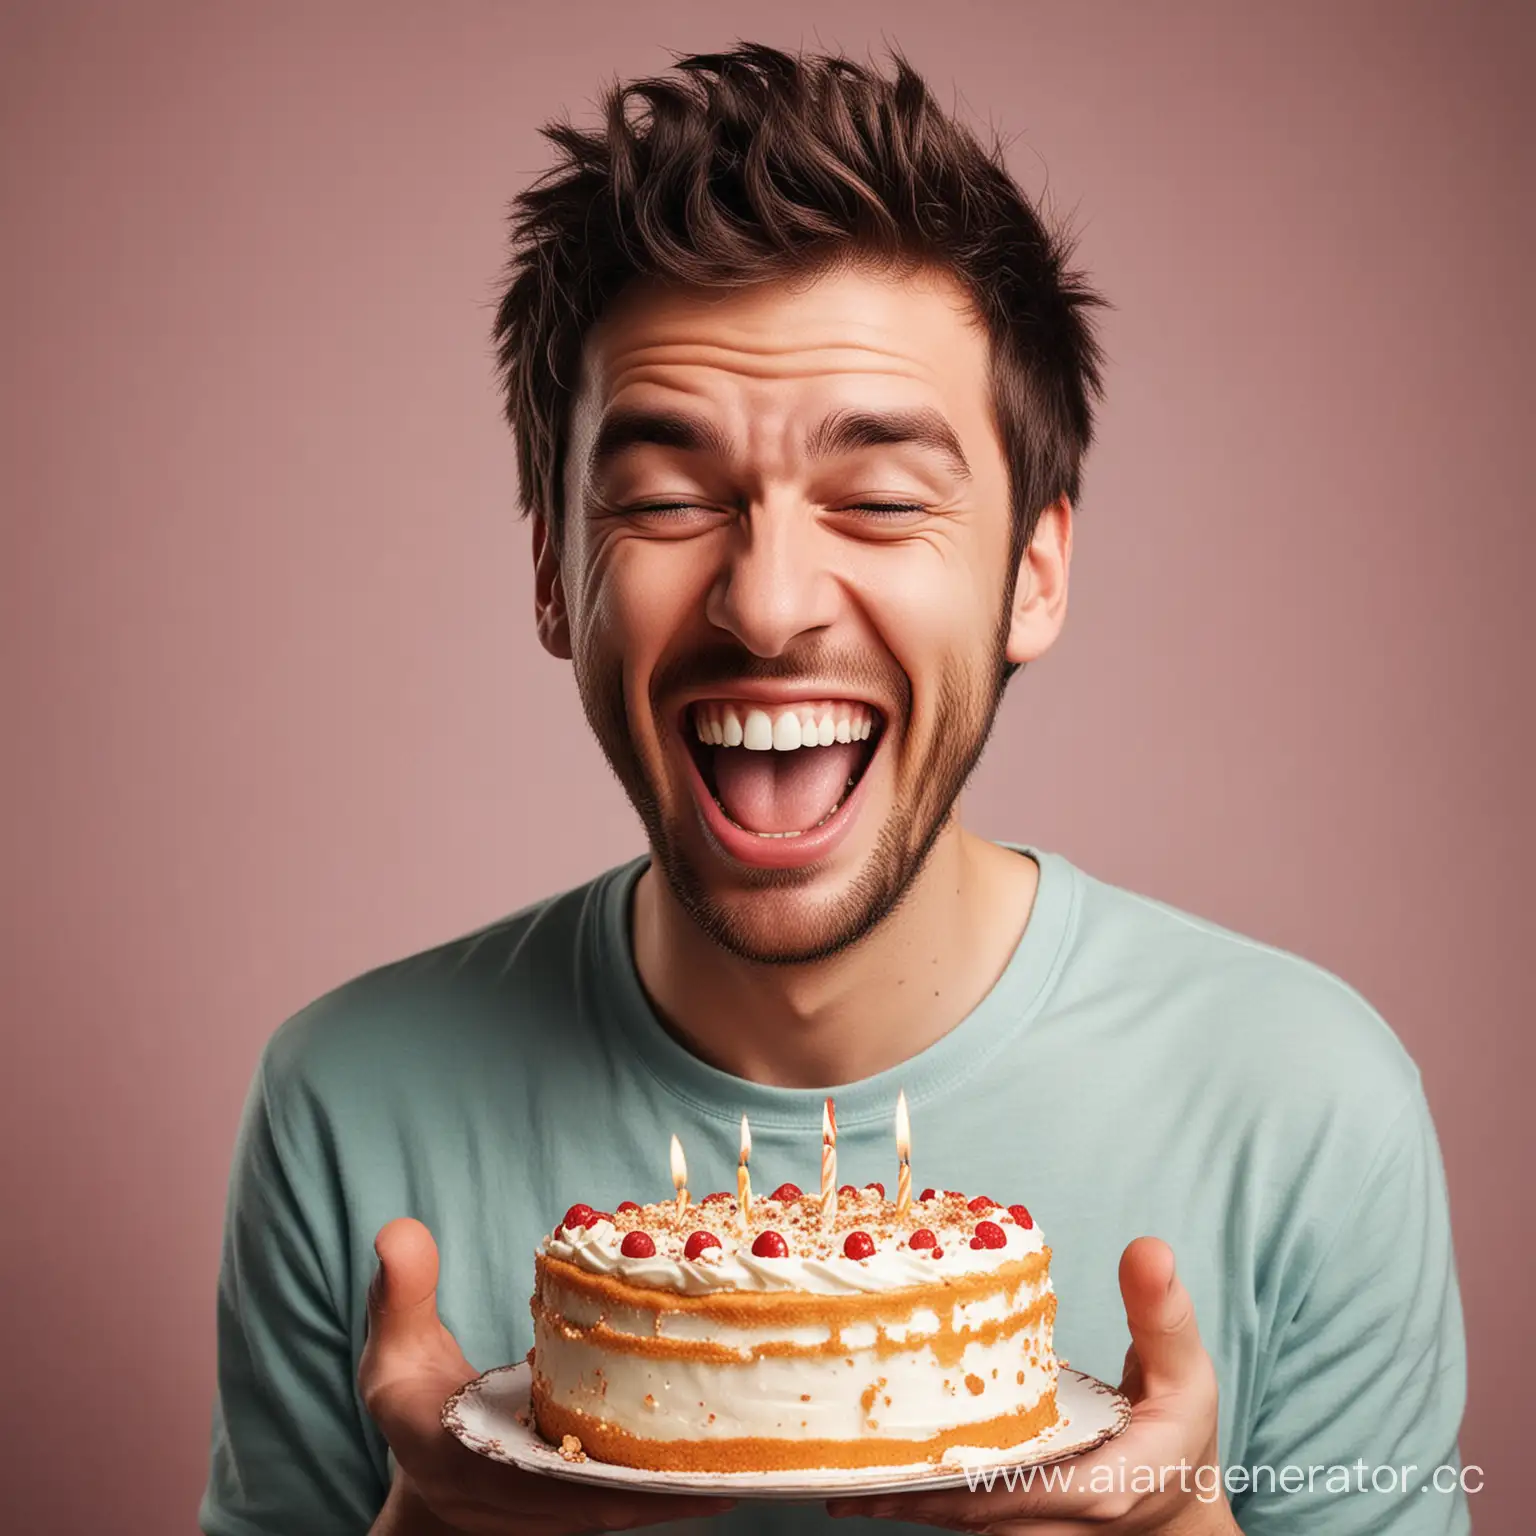 представьте себе парня с тортом в руках, на котором изображено его лицо. Он смеётся, глядя на своё изображение.